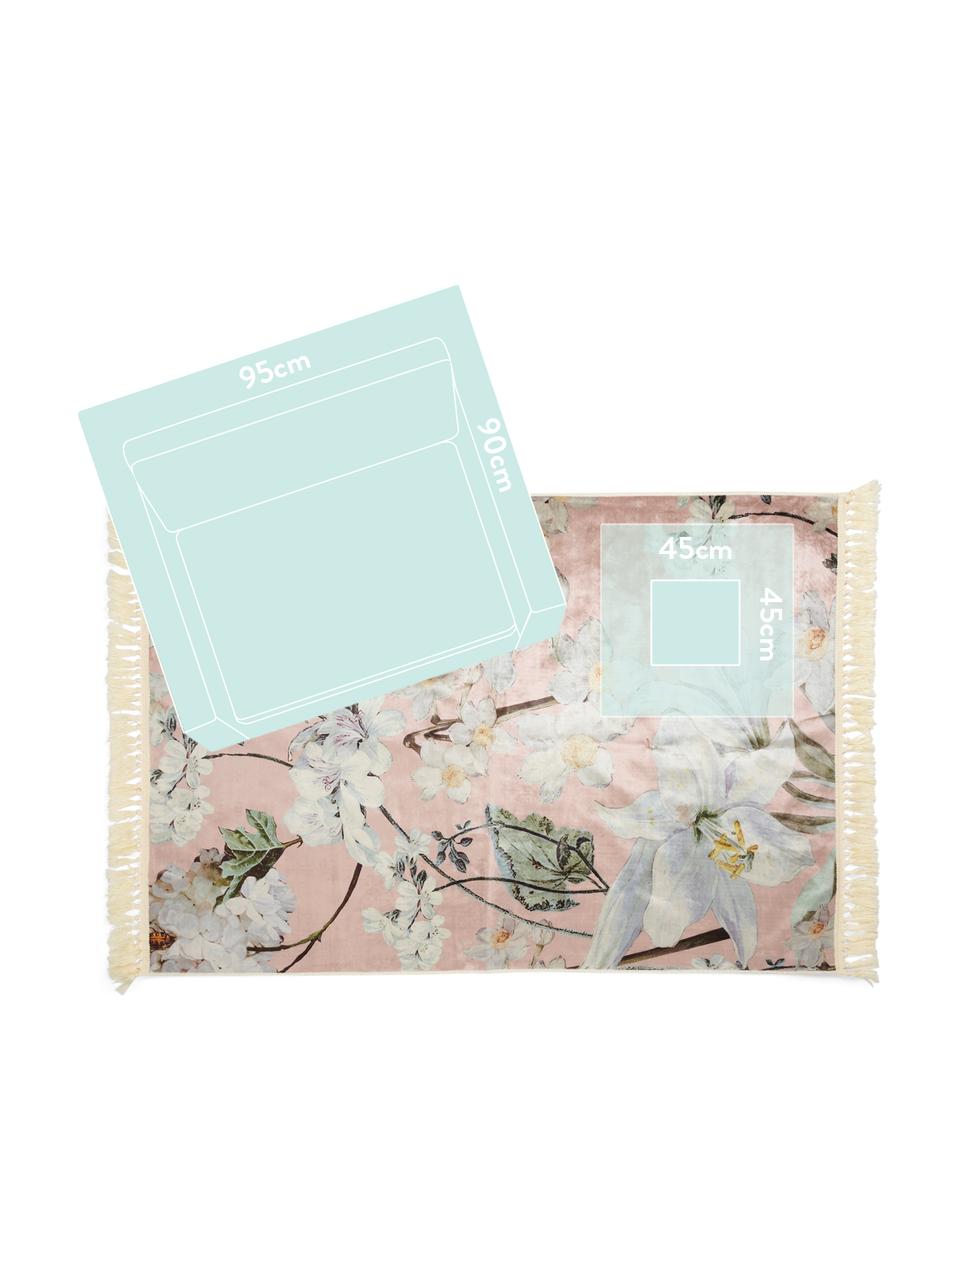 Teppich Rosalee mit Blumenmuster, 60% Polyester, 30% thermoplastisches Polyurethan, 10% Baumwolle, Rosa, Mehrfarbig, B 180 x L 240 cm (Größe M)